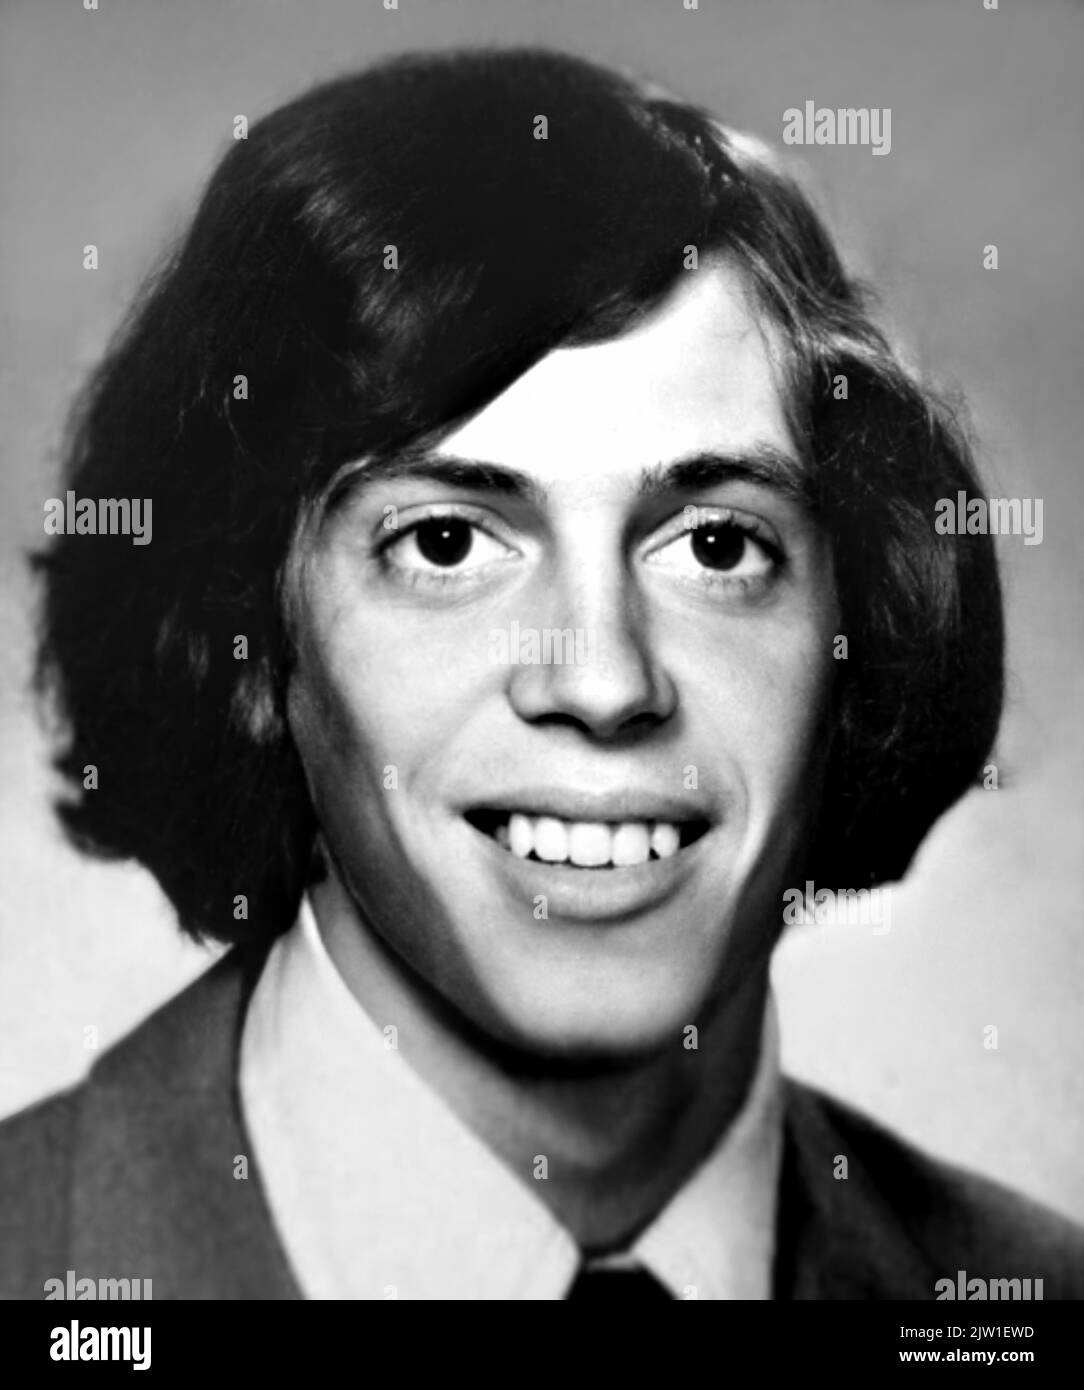 1974 , New York , Etats-Unis : l'acteur et réalisateur américain STEVE BUSCEMI ( né le 13 décembre 1957 ), 17 ans, photo de l'Annuaire du lycée . Photographe inconnu .- HISTOIRE - FOTO STORICHE - ATTORE - FILM - CINÉMA - personalità da giovane giovani - personnalités quand était jeune - regista - PORTRAIT - RITRATTO - ADOLESCENT - ADOLESCENZA - ADOLESCENT - SOURIRE - sorriso --- ARCHIVIO GBB Banque D'Images